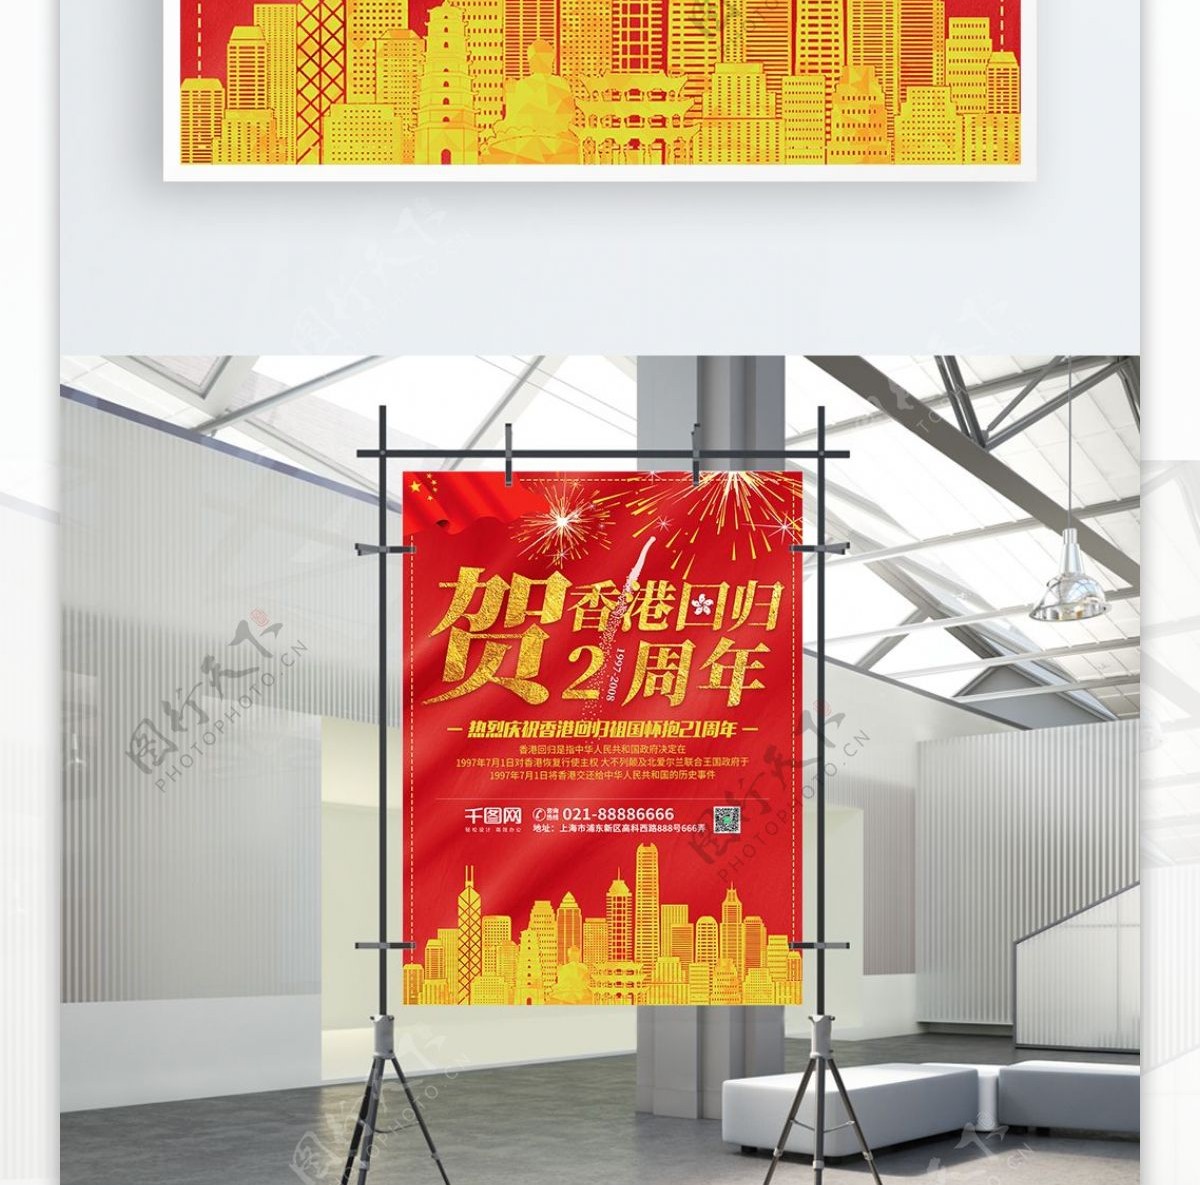 简约红色庆祝香港回归21周年节日海报